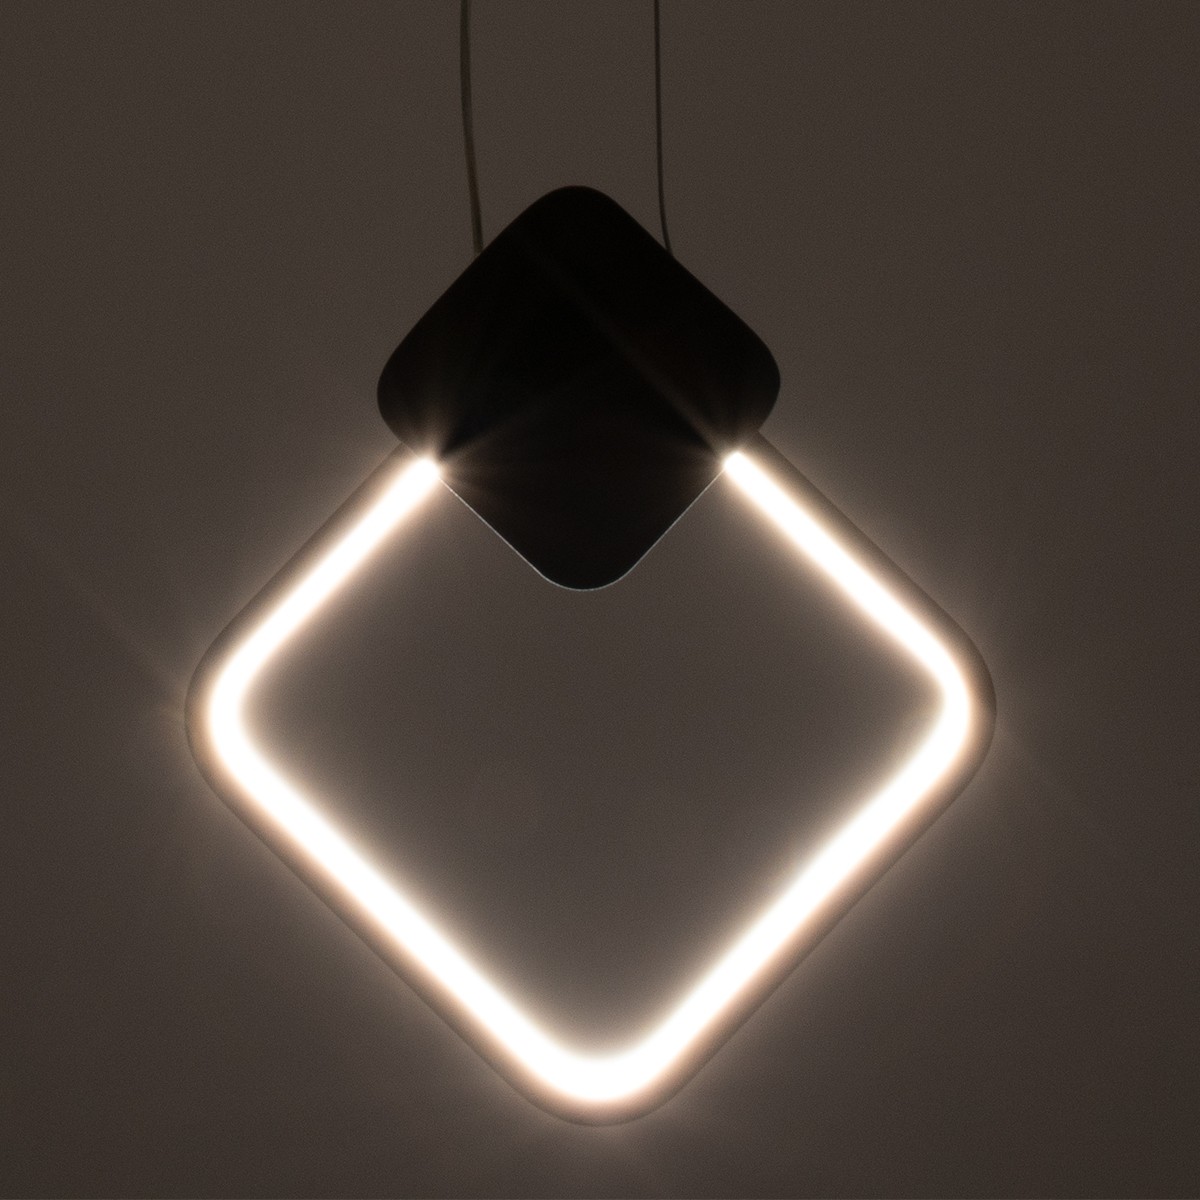 LED Κρεμαστό Φωτιστικό Οροφής Λευκό Design MARY 12W Εναλλαγή Φωτισμού μέσω Διακόπτη On/Off Μ20 x Π2.3 x Υ28.5cm 61083